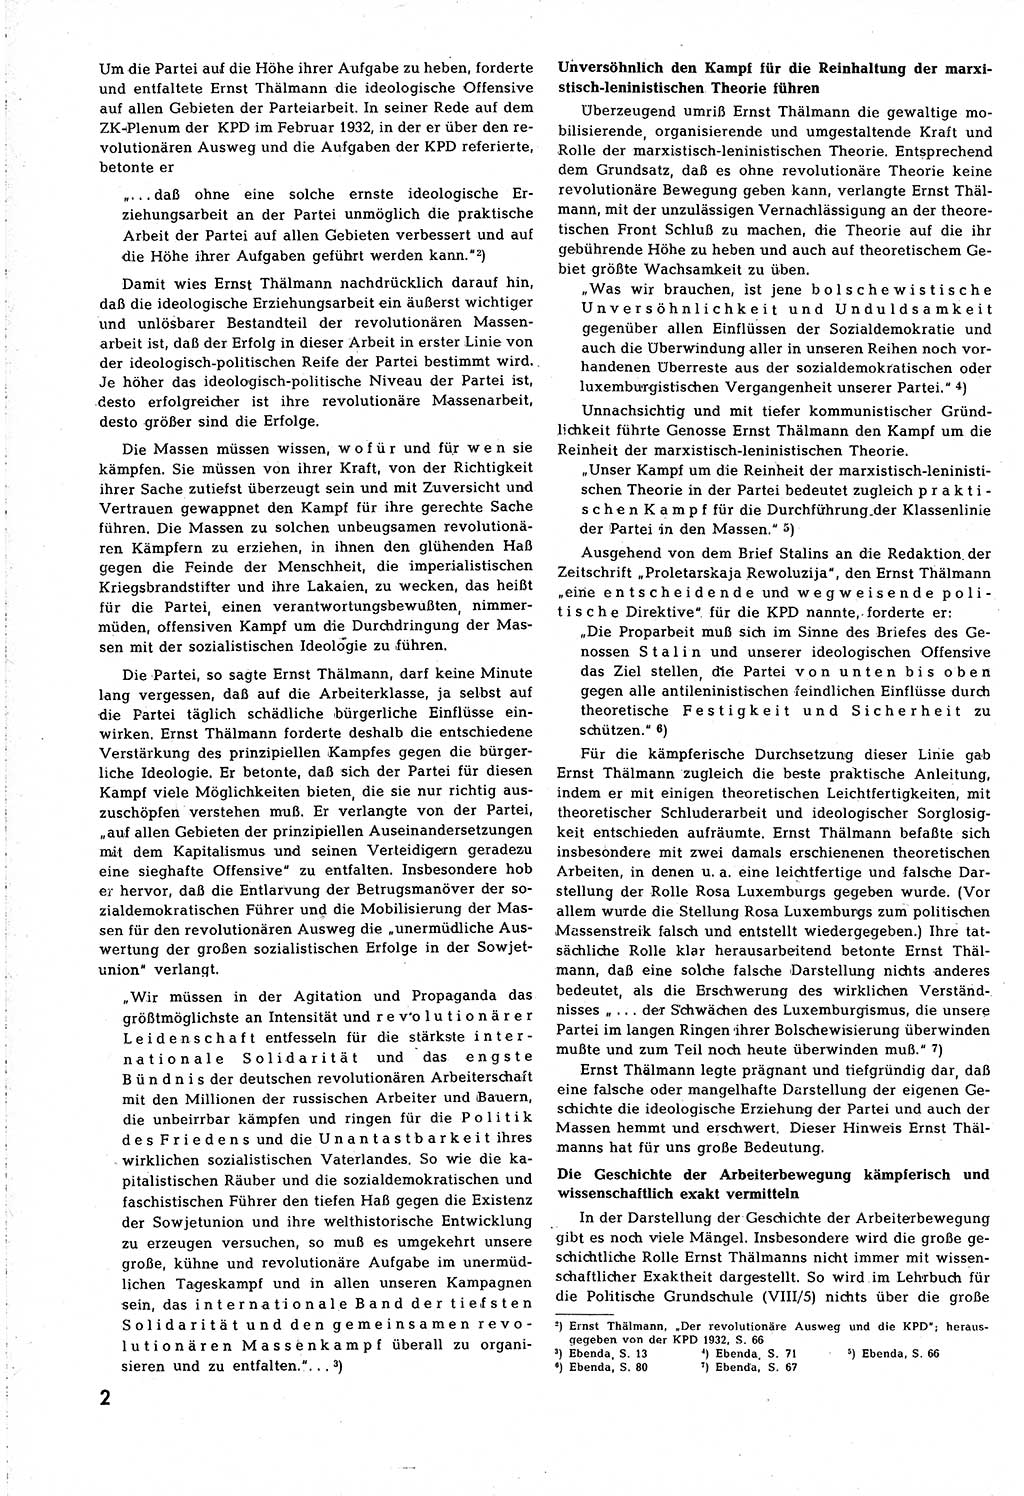 Neuer Weg (NW), Organ des Zentralkomitees (ZK) [Sozialistische Einheitspartei Deutschlands (SED)] für alle Parteiarbeiter, 8. Jahrgang [Deutsche Demokratische Republik (DDR)] 1953, Heft 7/2 (NW ZK SED DDR 1953, H. 7/2)